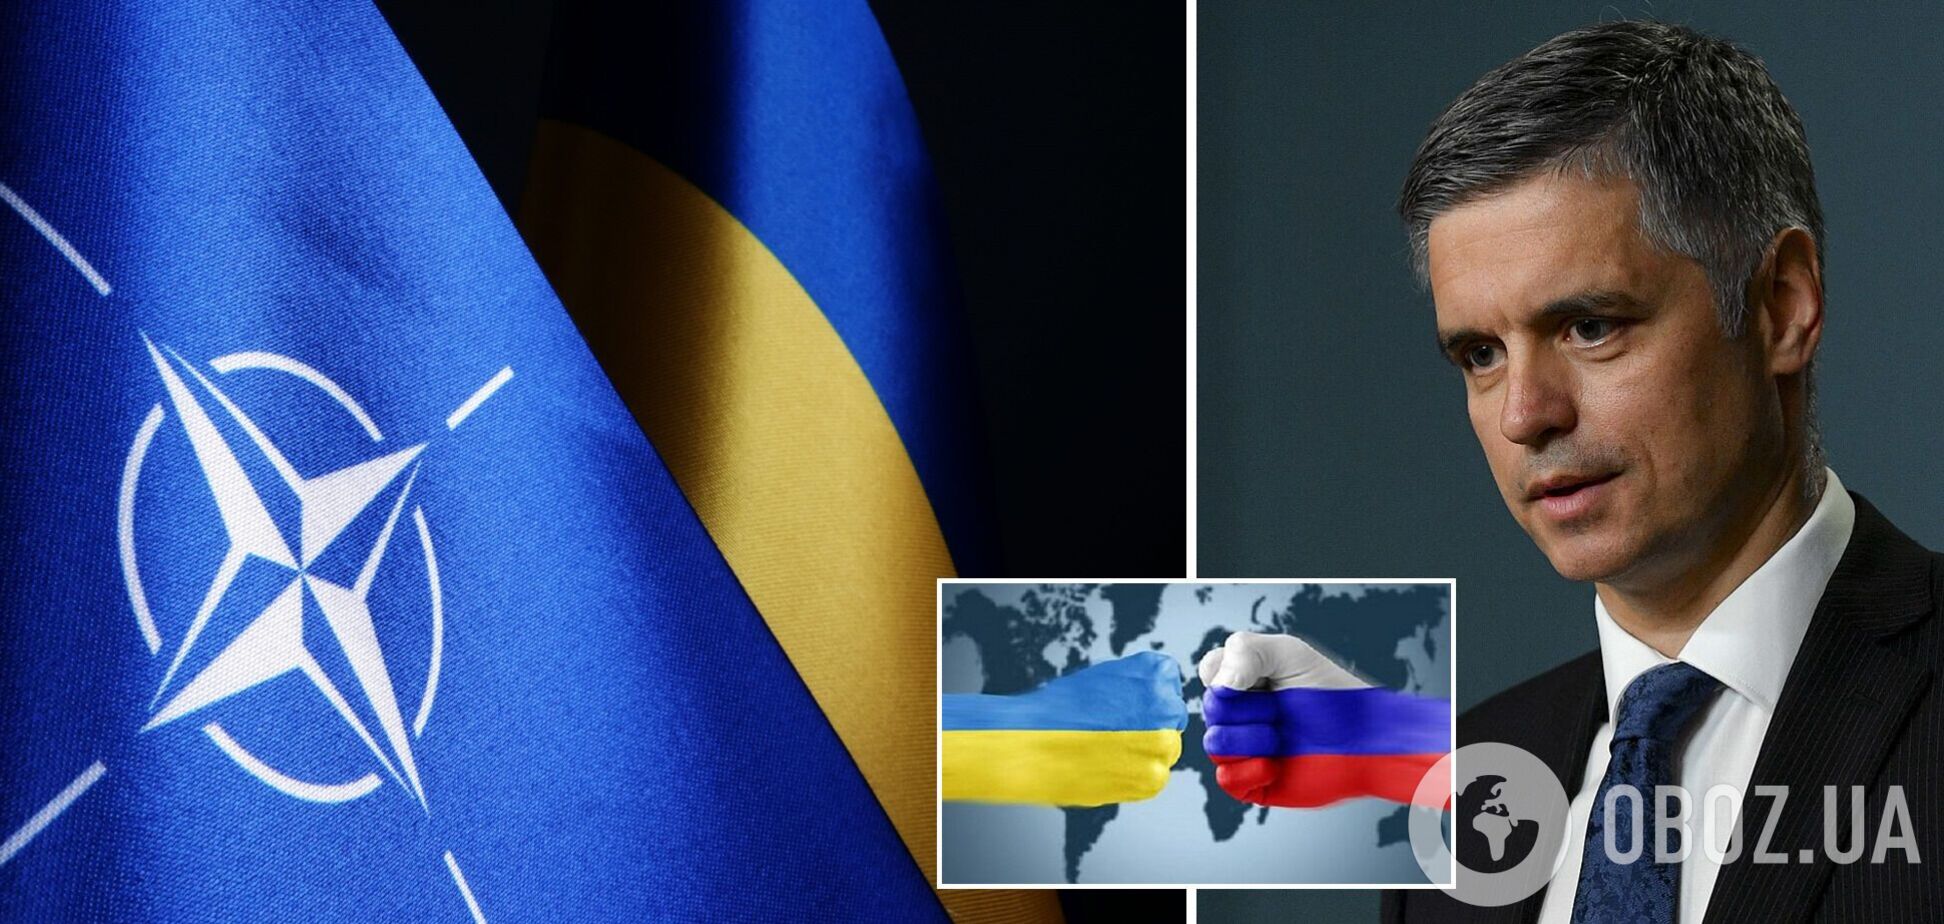 Пристайко відзначився скандальною заявою про вступ України в НАТО: у Зеленського та МЗС відреагували